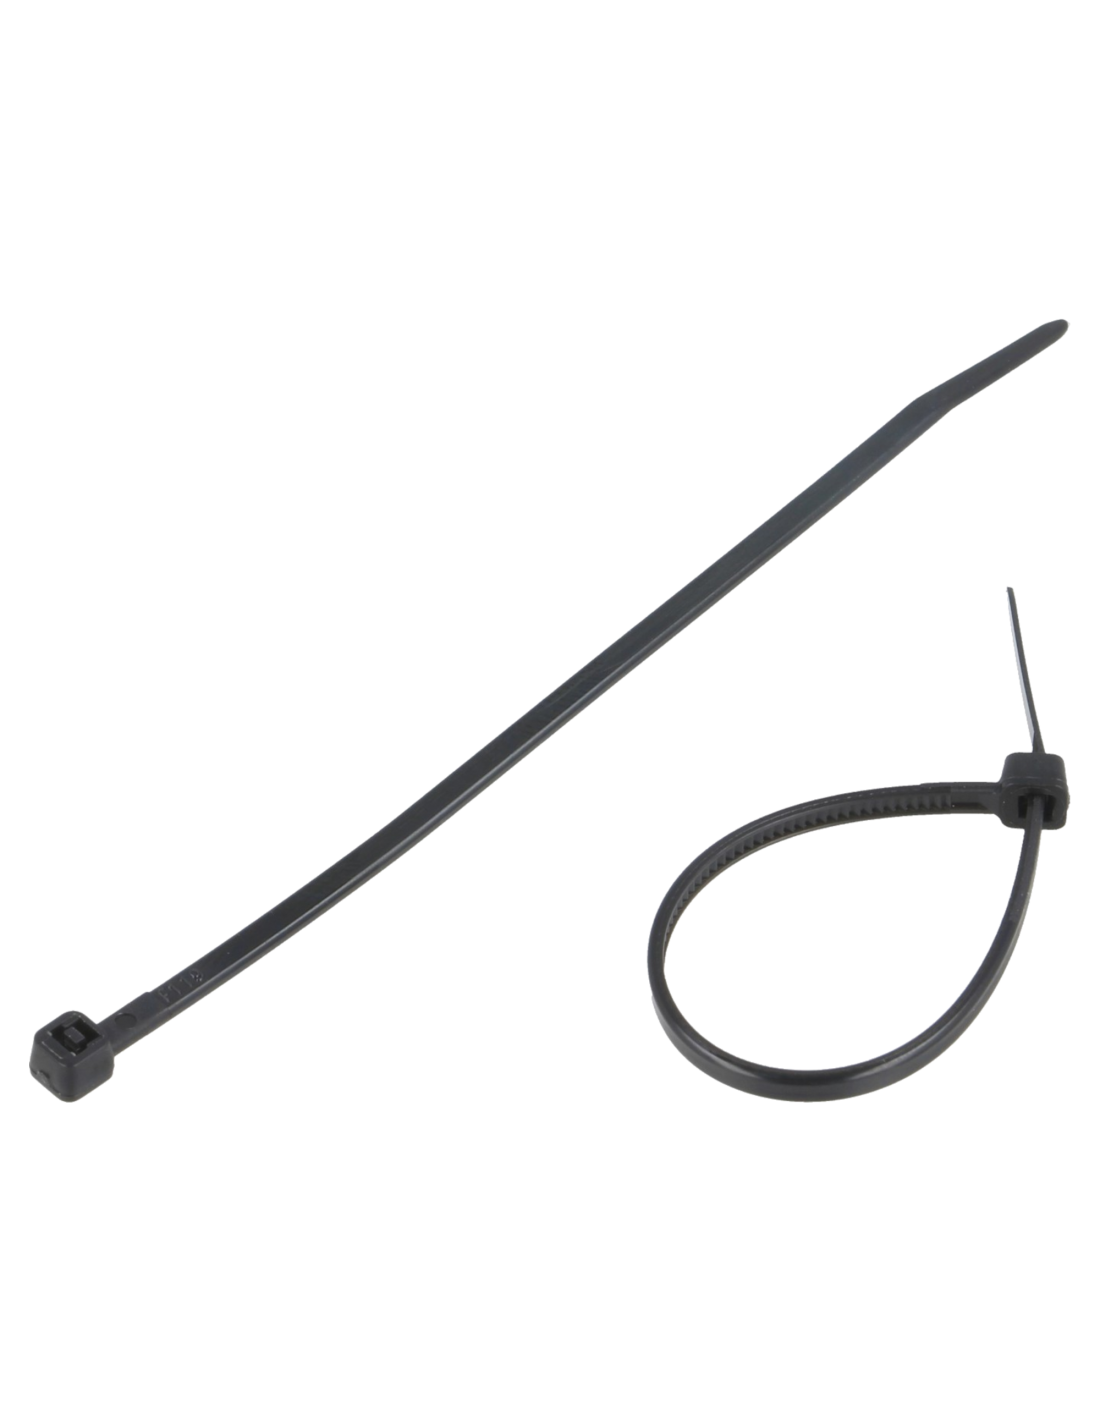 Colliers Rilsan noirs (lot de 100) - 200 x 3.6 mm - Câble management - Top  Achat